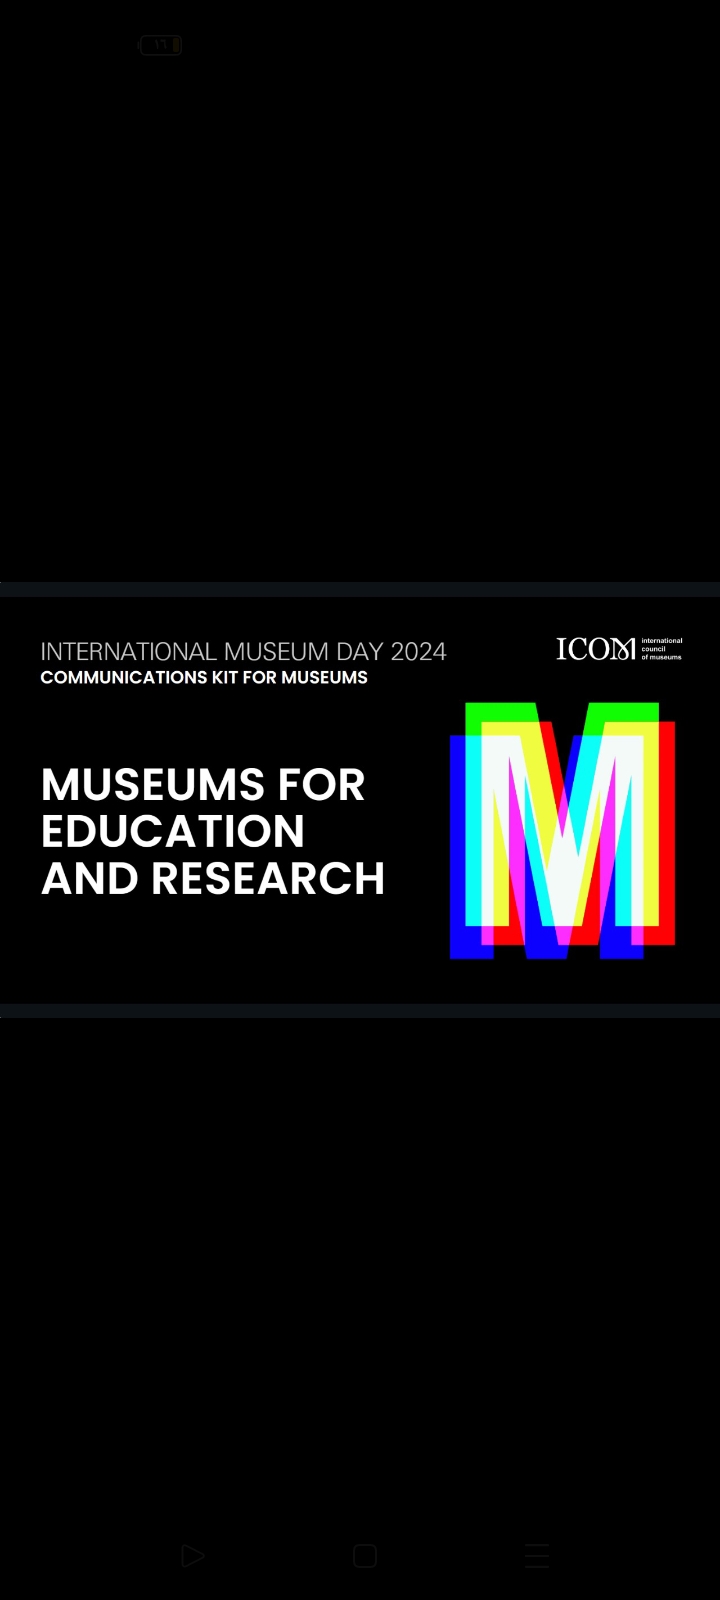 "المتاحف من أجل التعليم والبحث العلمي" موضوع الاحتفال باليوم العالمي للمتاحف لعام 2024